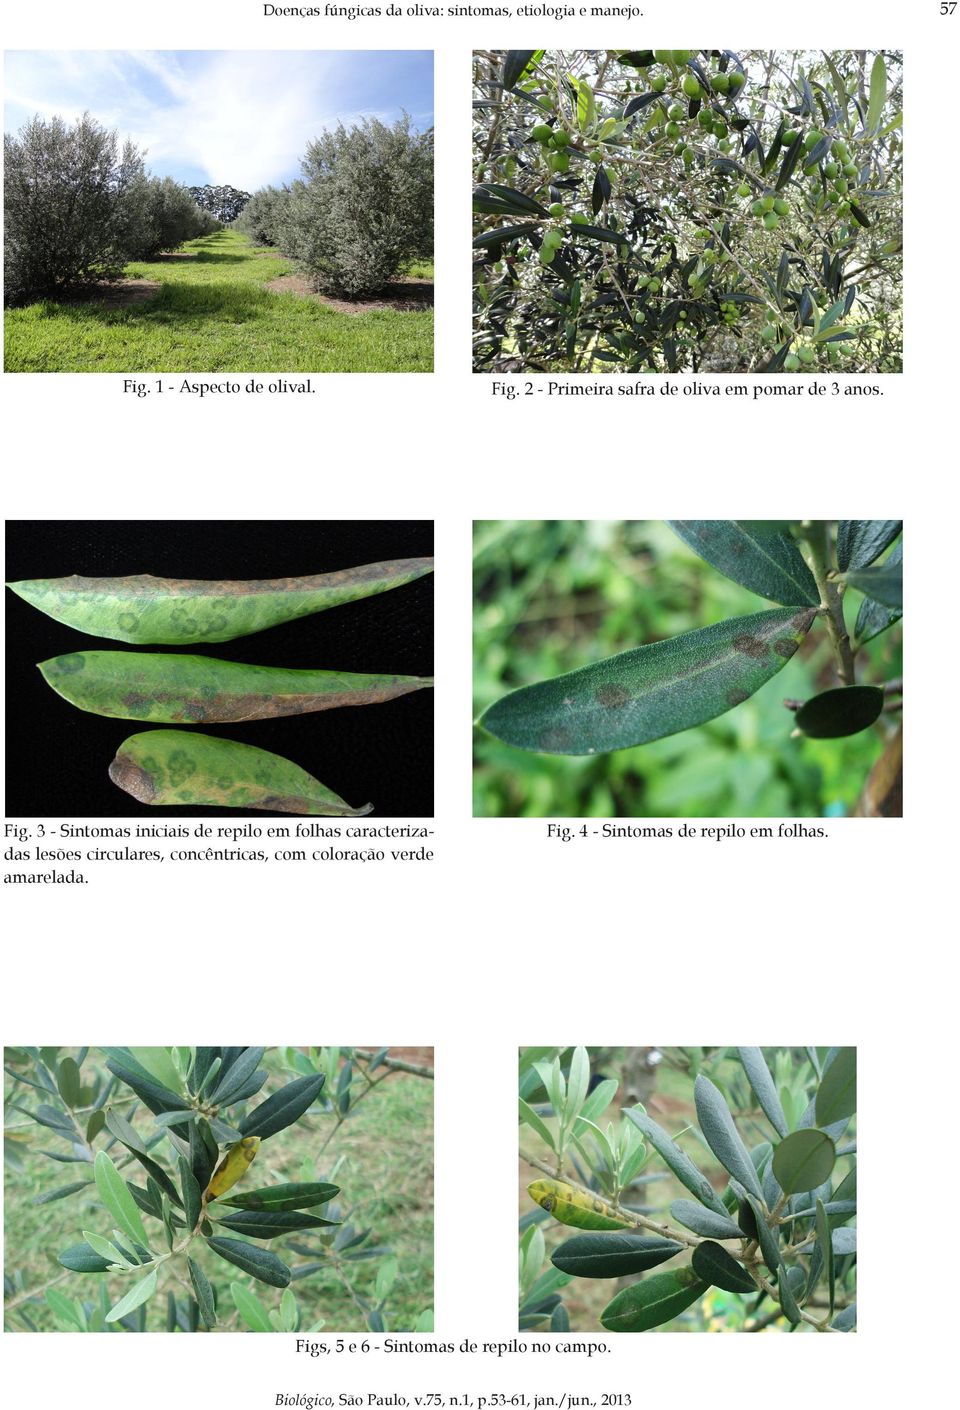 3 - Sintomas iniciais de repilo em folhas caracterizadas lesões circulares,